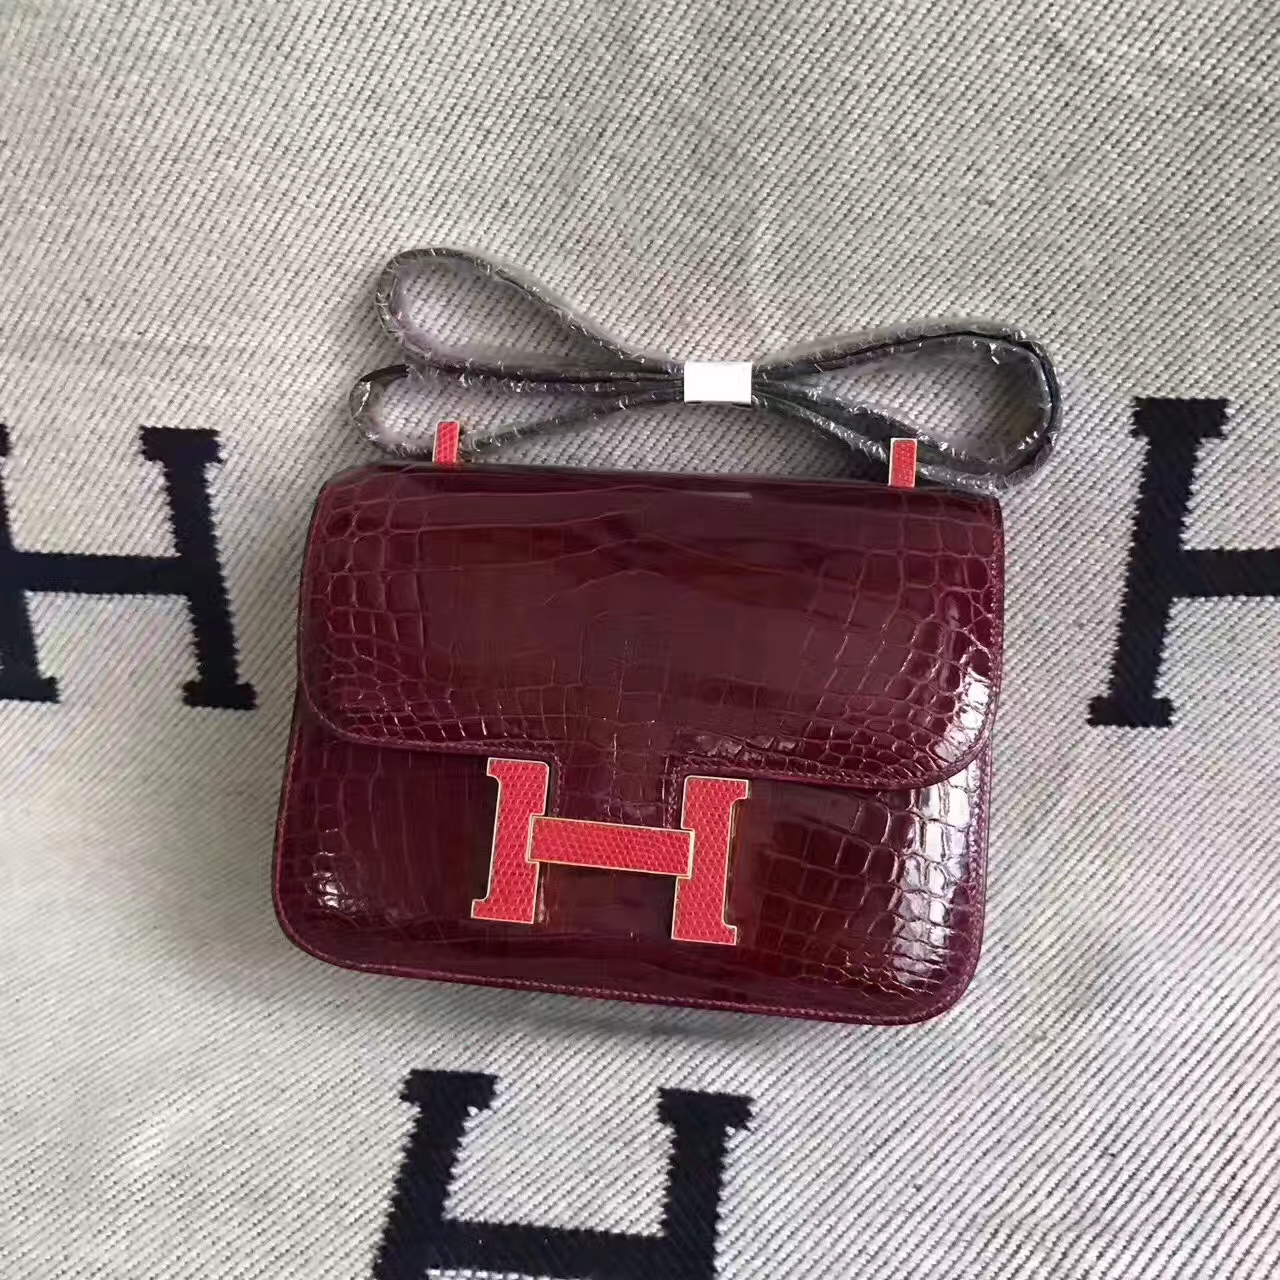 Hermes CK57 Bordeaux Red Shiny Crocodile Leather Constance Bag 23cm